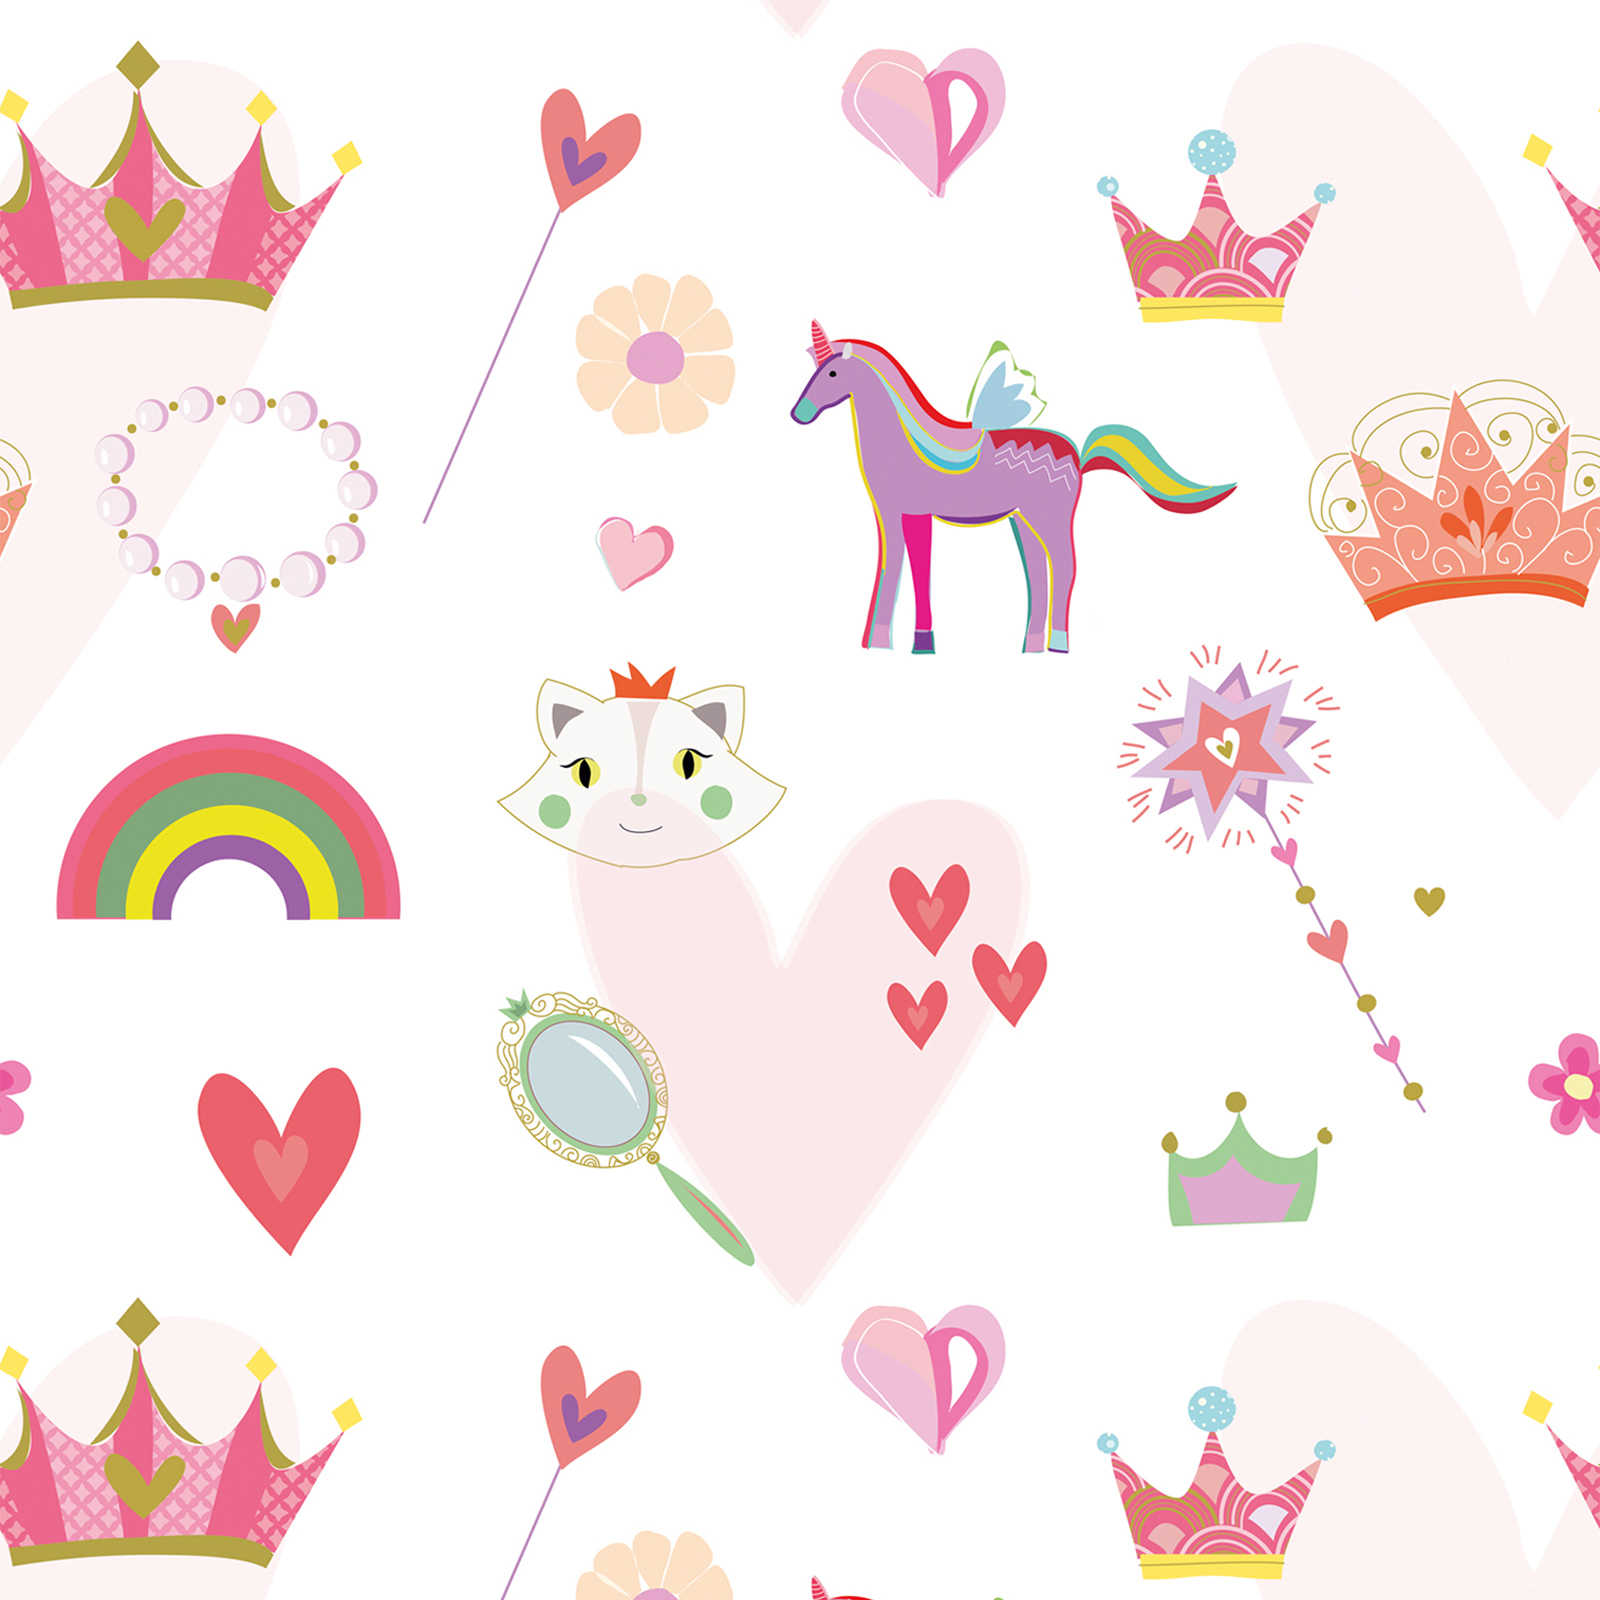 Papier peint enfant style princesse avec cœurs et animaux - multicolore, rose, blanc
